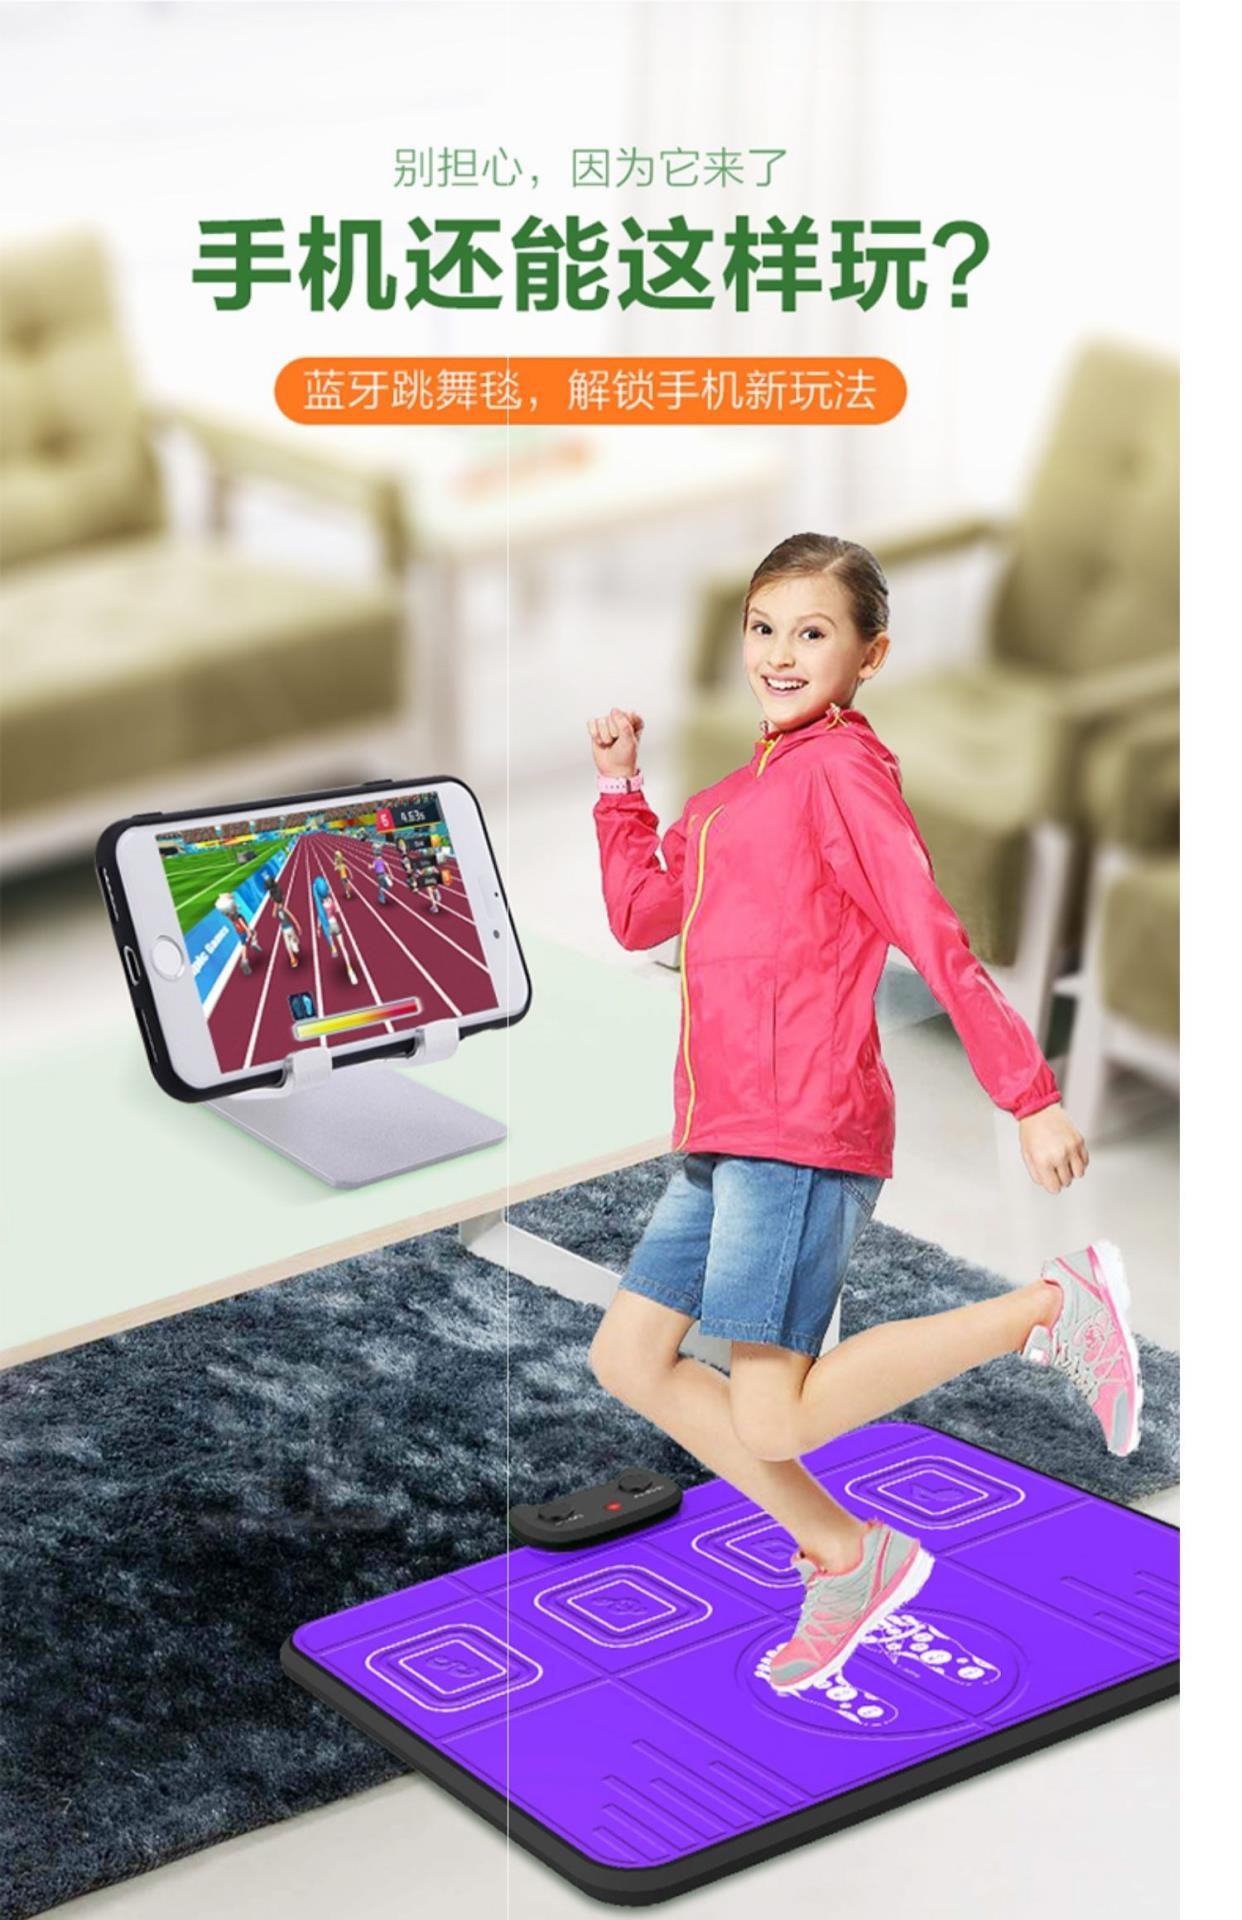 Máy chơi game một người chơi tại nhà Tay cầm truyền hình cáp TV chèn trong chăn khiêu vũ động somatosensory khiêu vũ chăn dày - Dance pad